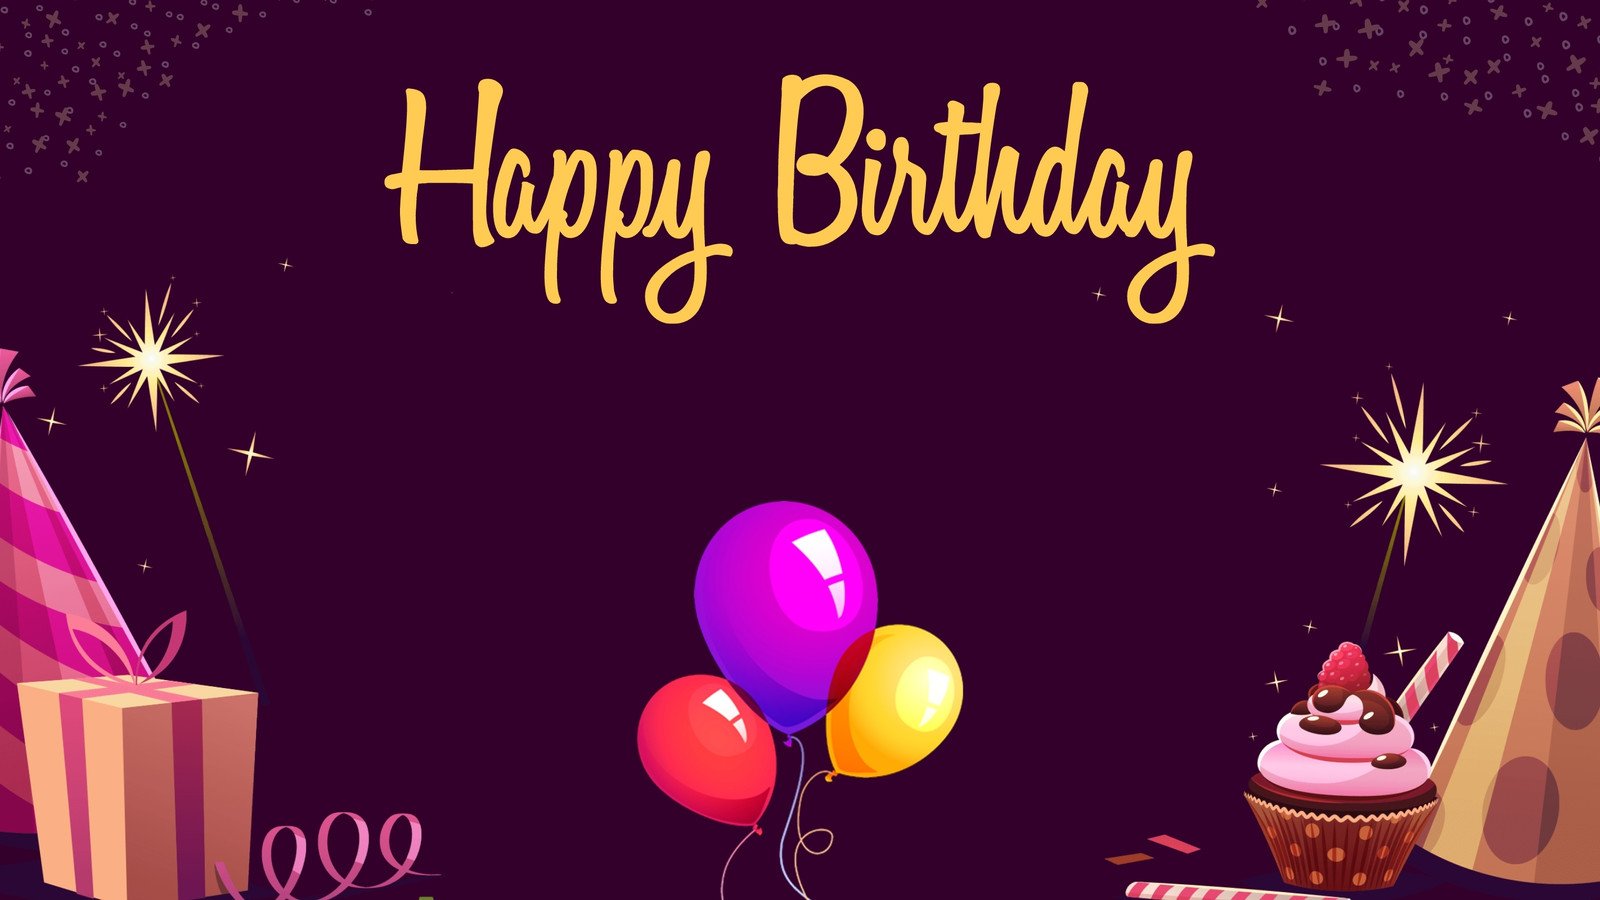 Với một số mẫu hình nền Zoom sinh nhật tùy chỉnh miễn phí, bạn có thể tạo một không gian sinh nhật trực tuyến độc đáo chỉ với một vài thao tác đơn giản. Dùng hình nền sinh nhật riêng của mình để thu hút sự chú ý của mọi người và có một bữa tiệc trực tuyến hoành tráng nhất.